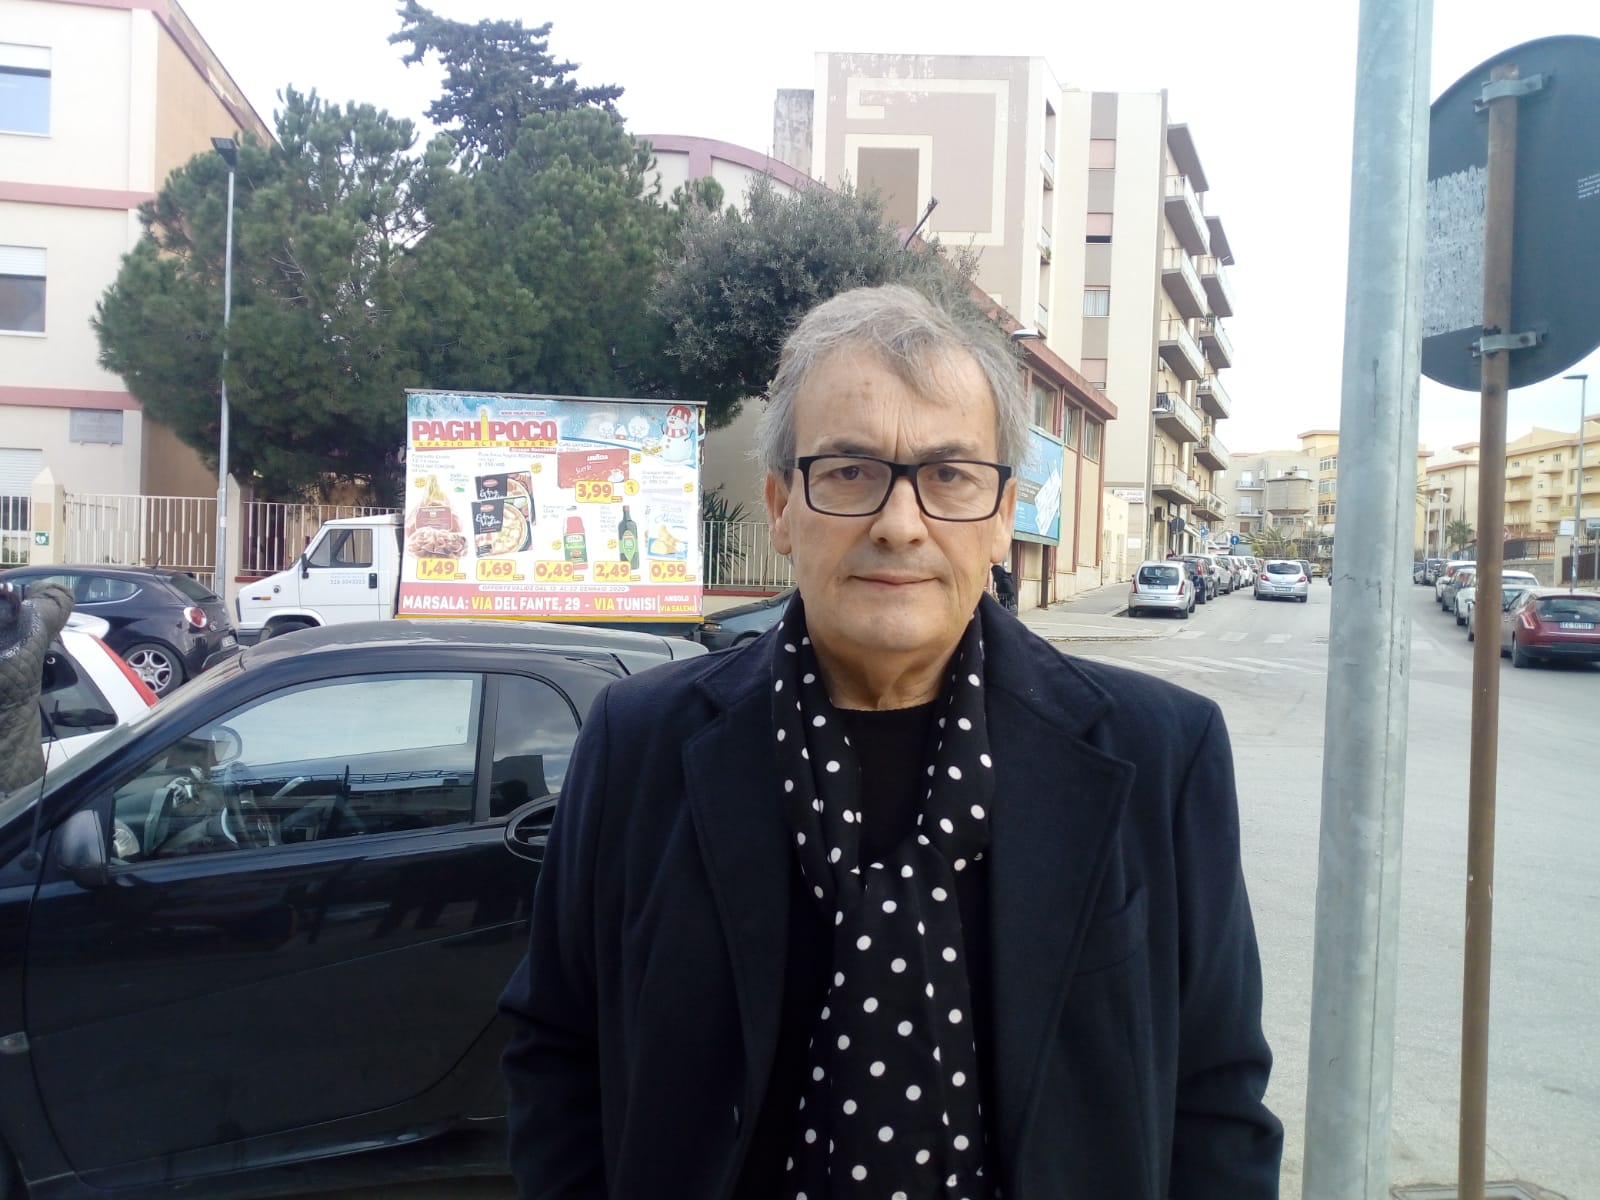 Rubbino(Uguaglianza per la Sicilia): “Cerchiamo alleanze con quanti hanno a cuore i problemi della città”